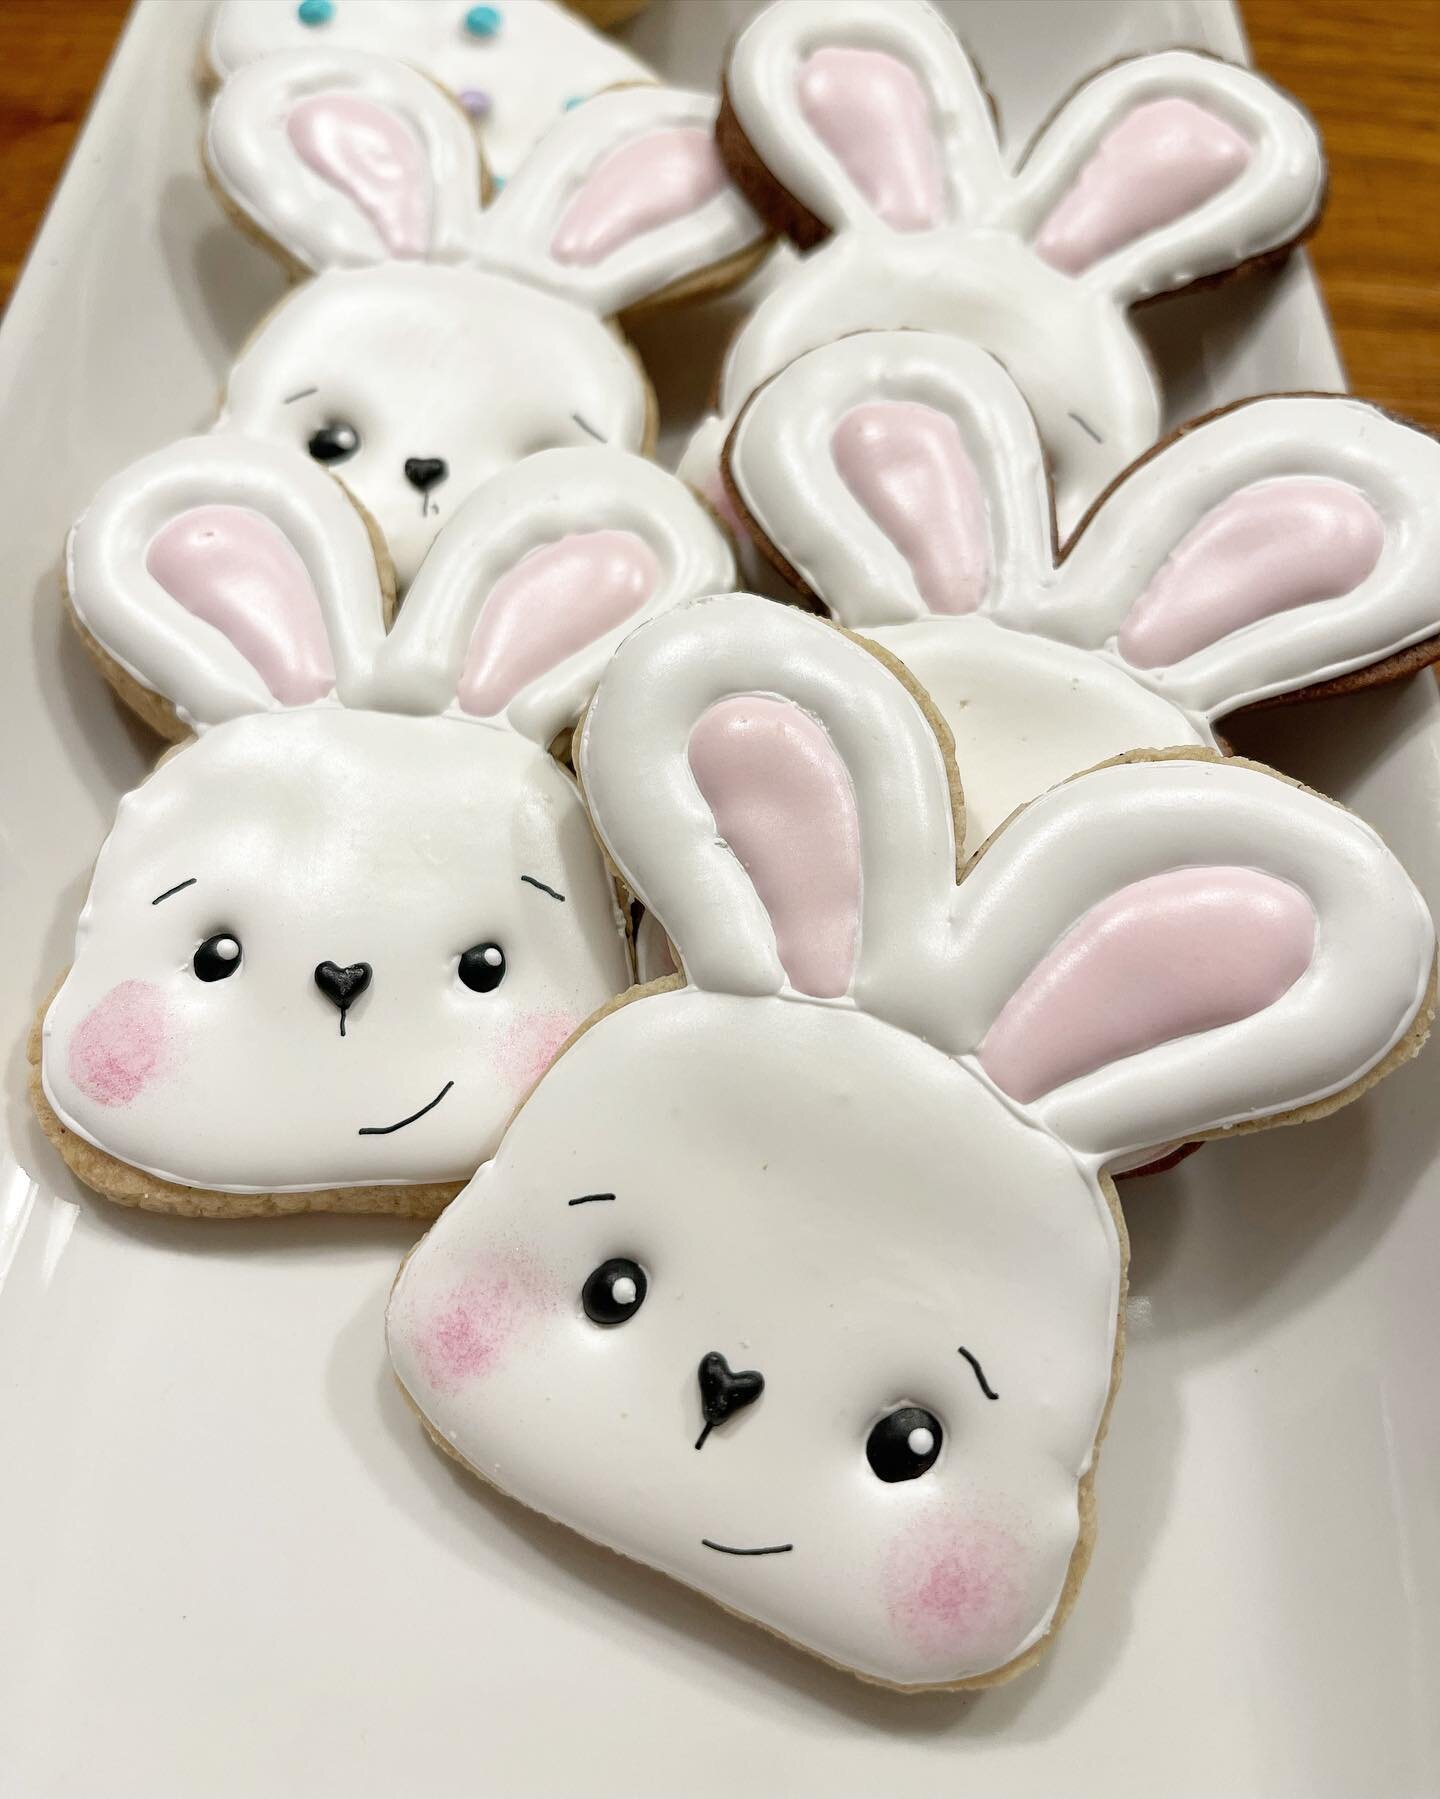 Easter Bunny Cookies 🐰 #customcookies #eastercookies